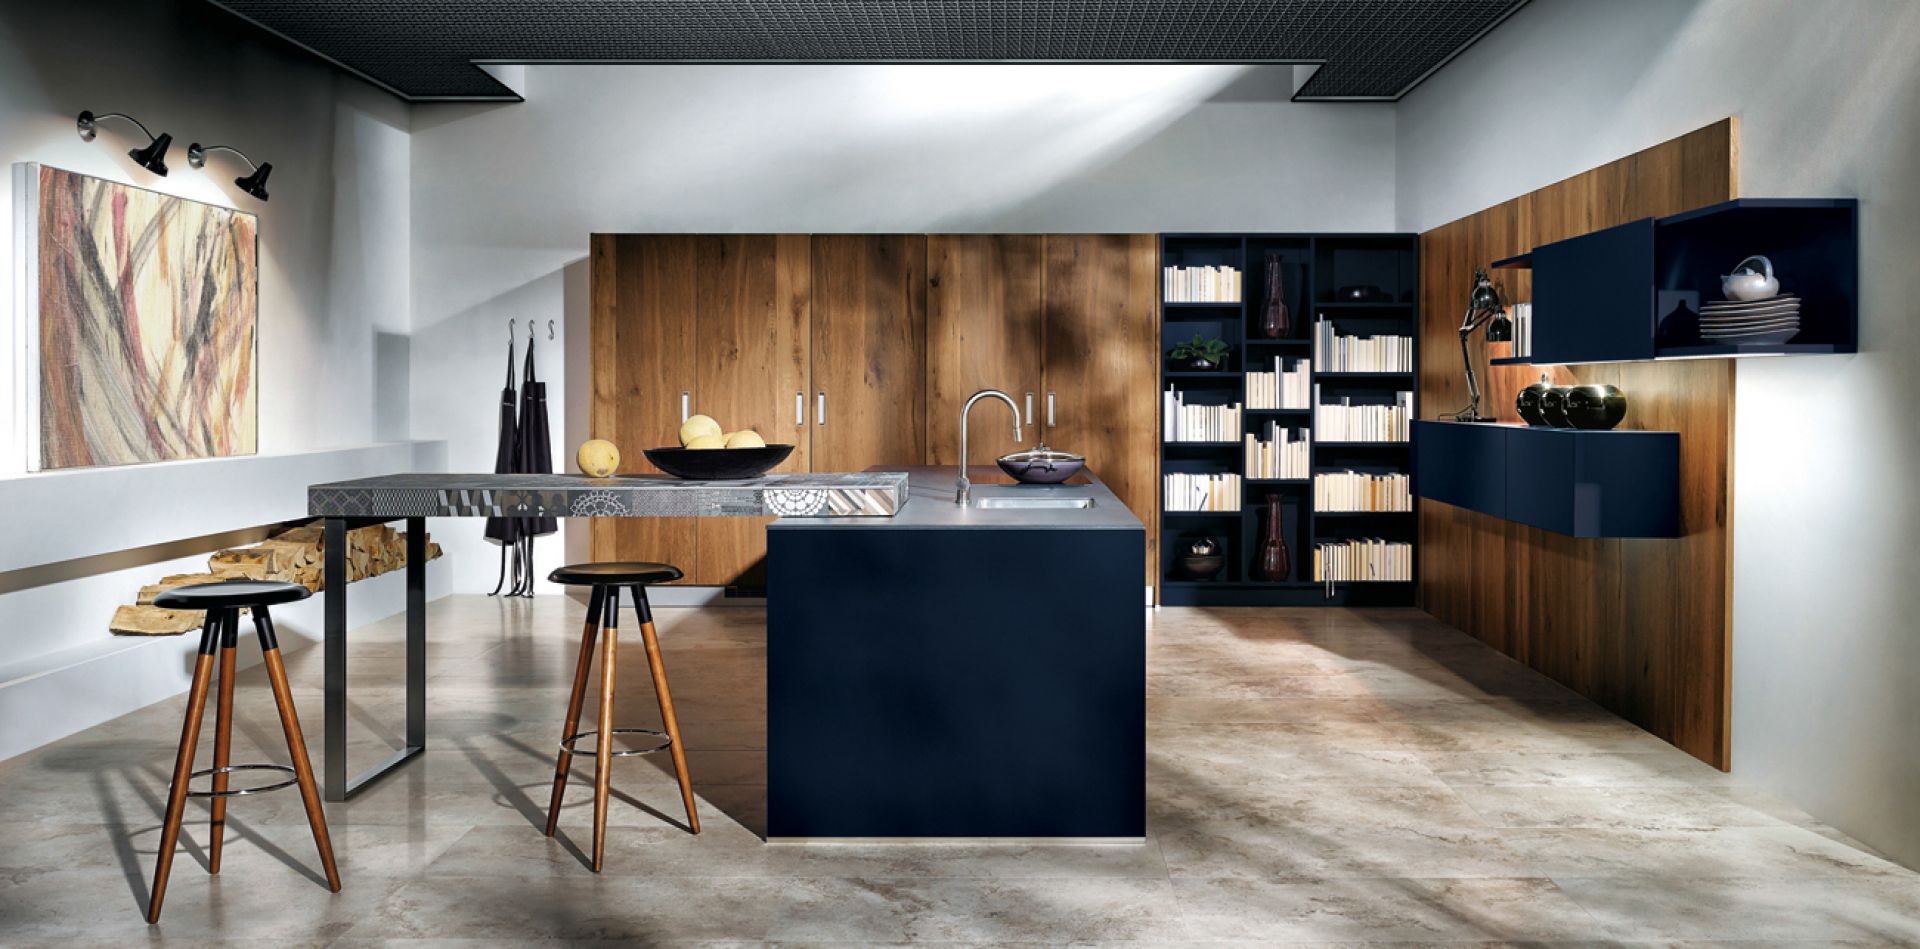 Szafki w kolorze indigo doskonale współgrają z drewnianymi frontami kuchennej szafy. Fot. Max-Fliz